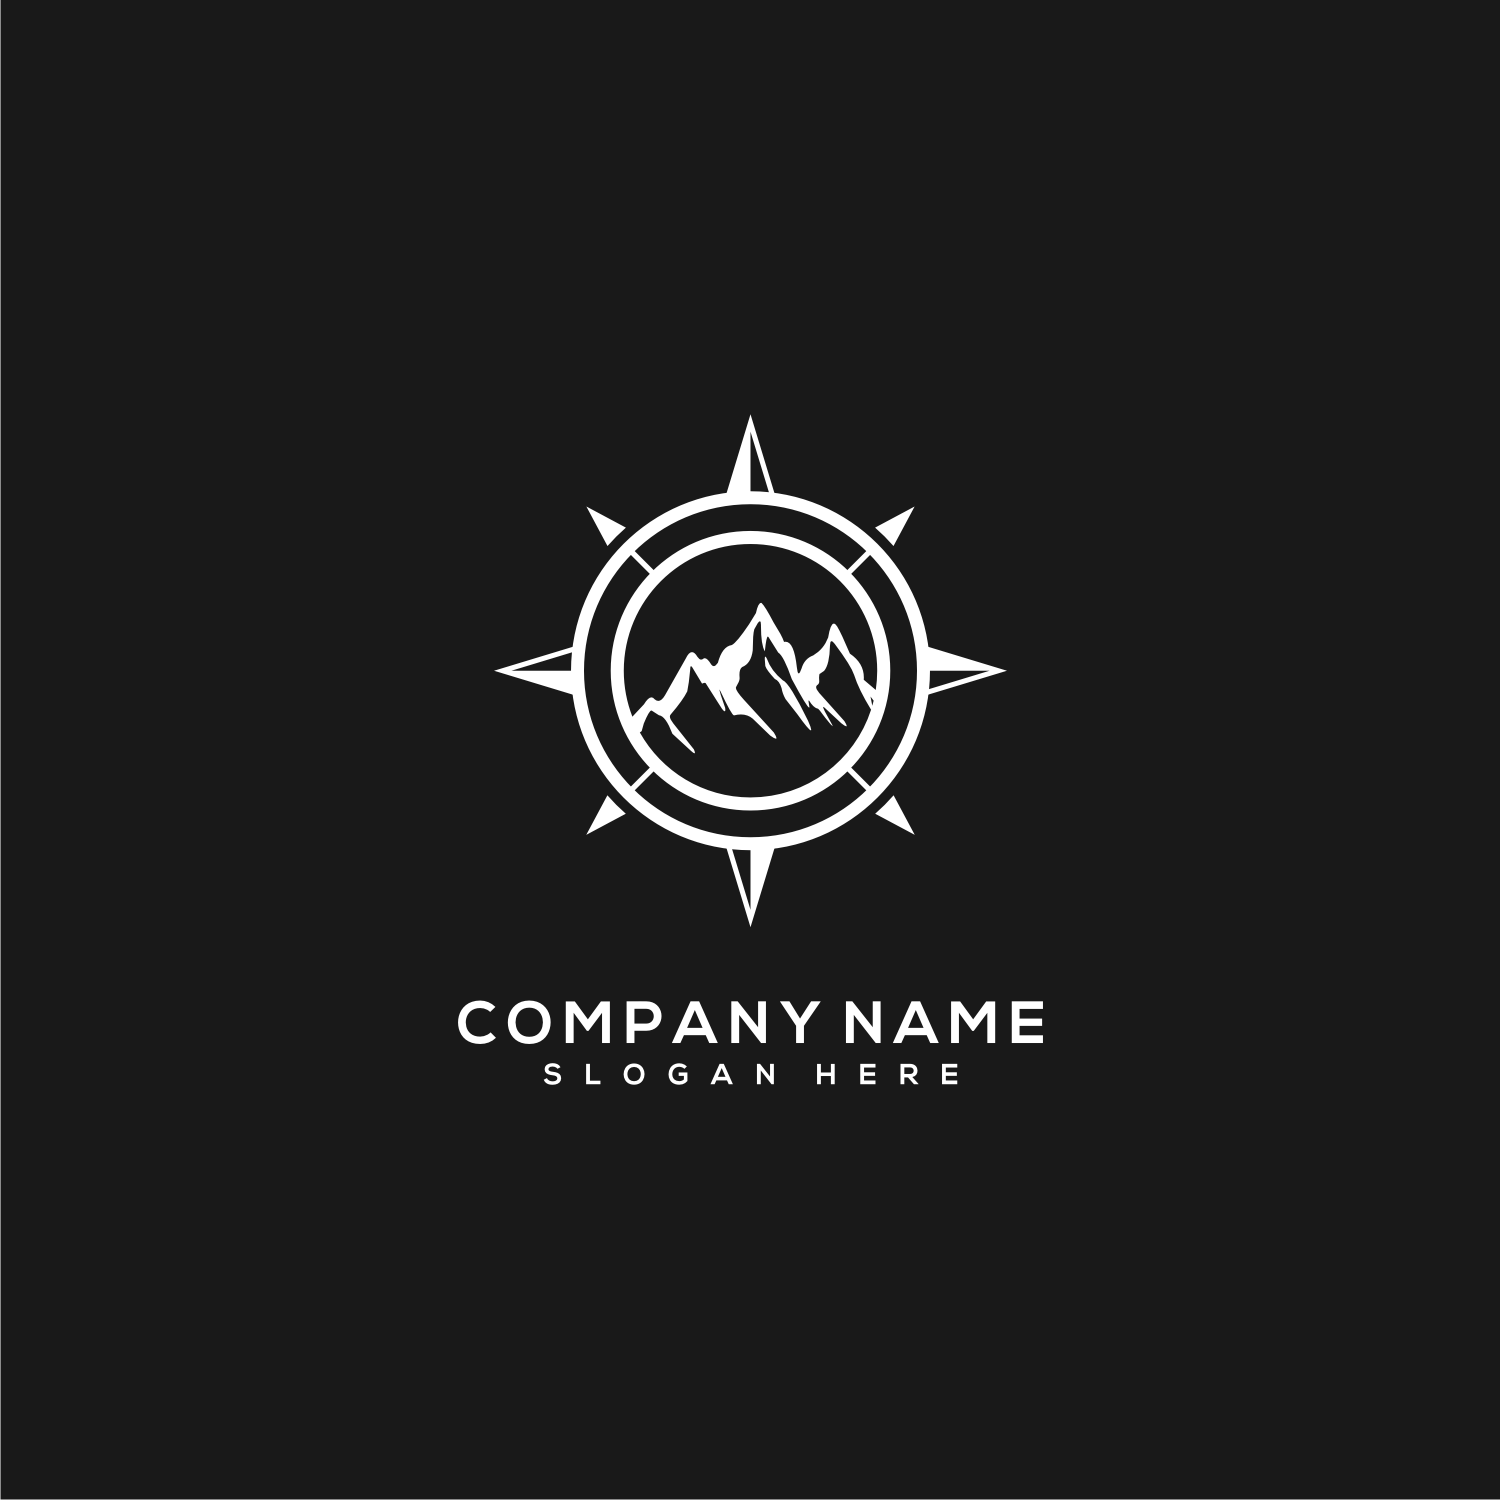 3 Mountain and Compass Concept Logo Designs